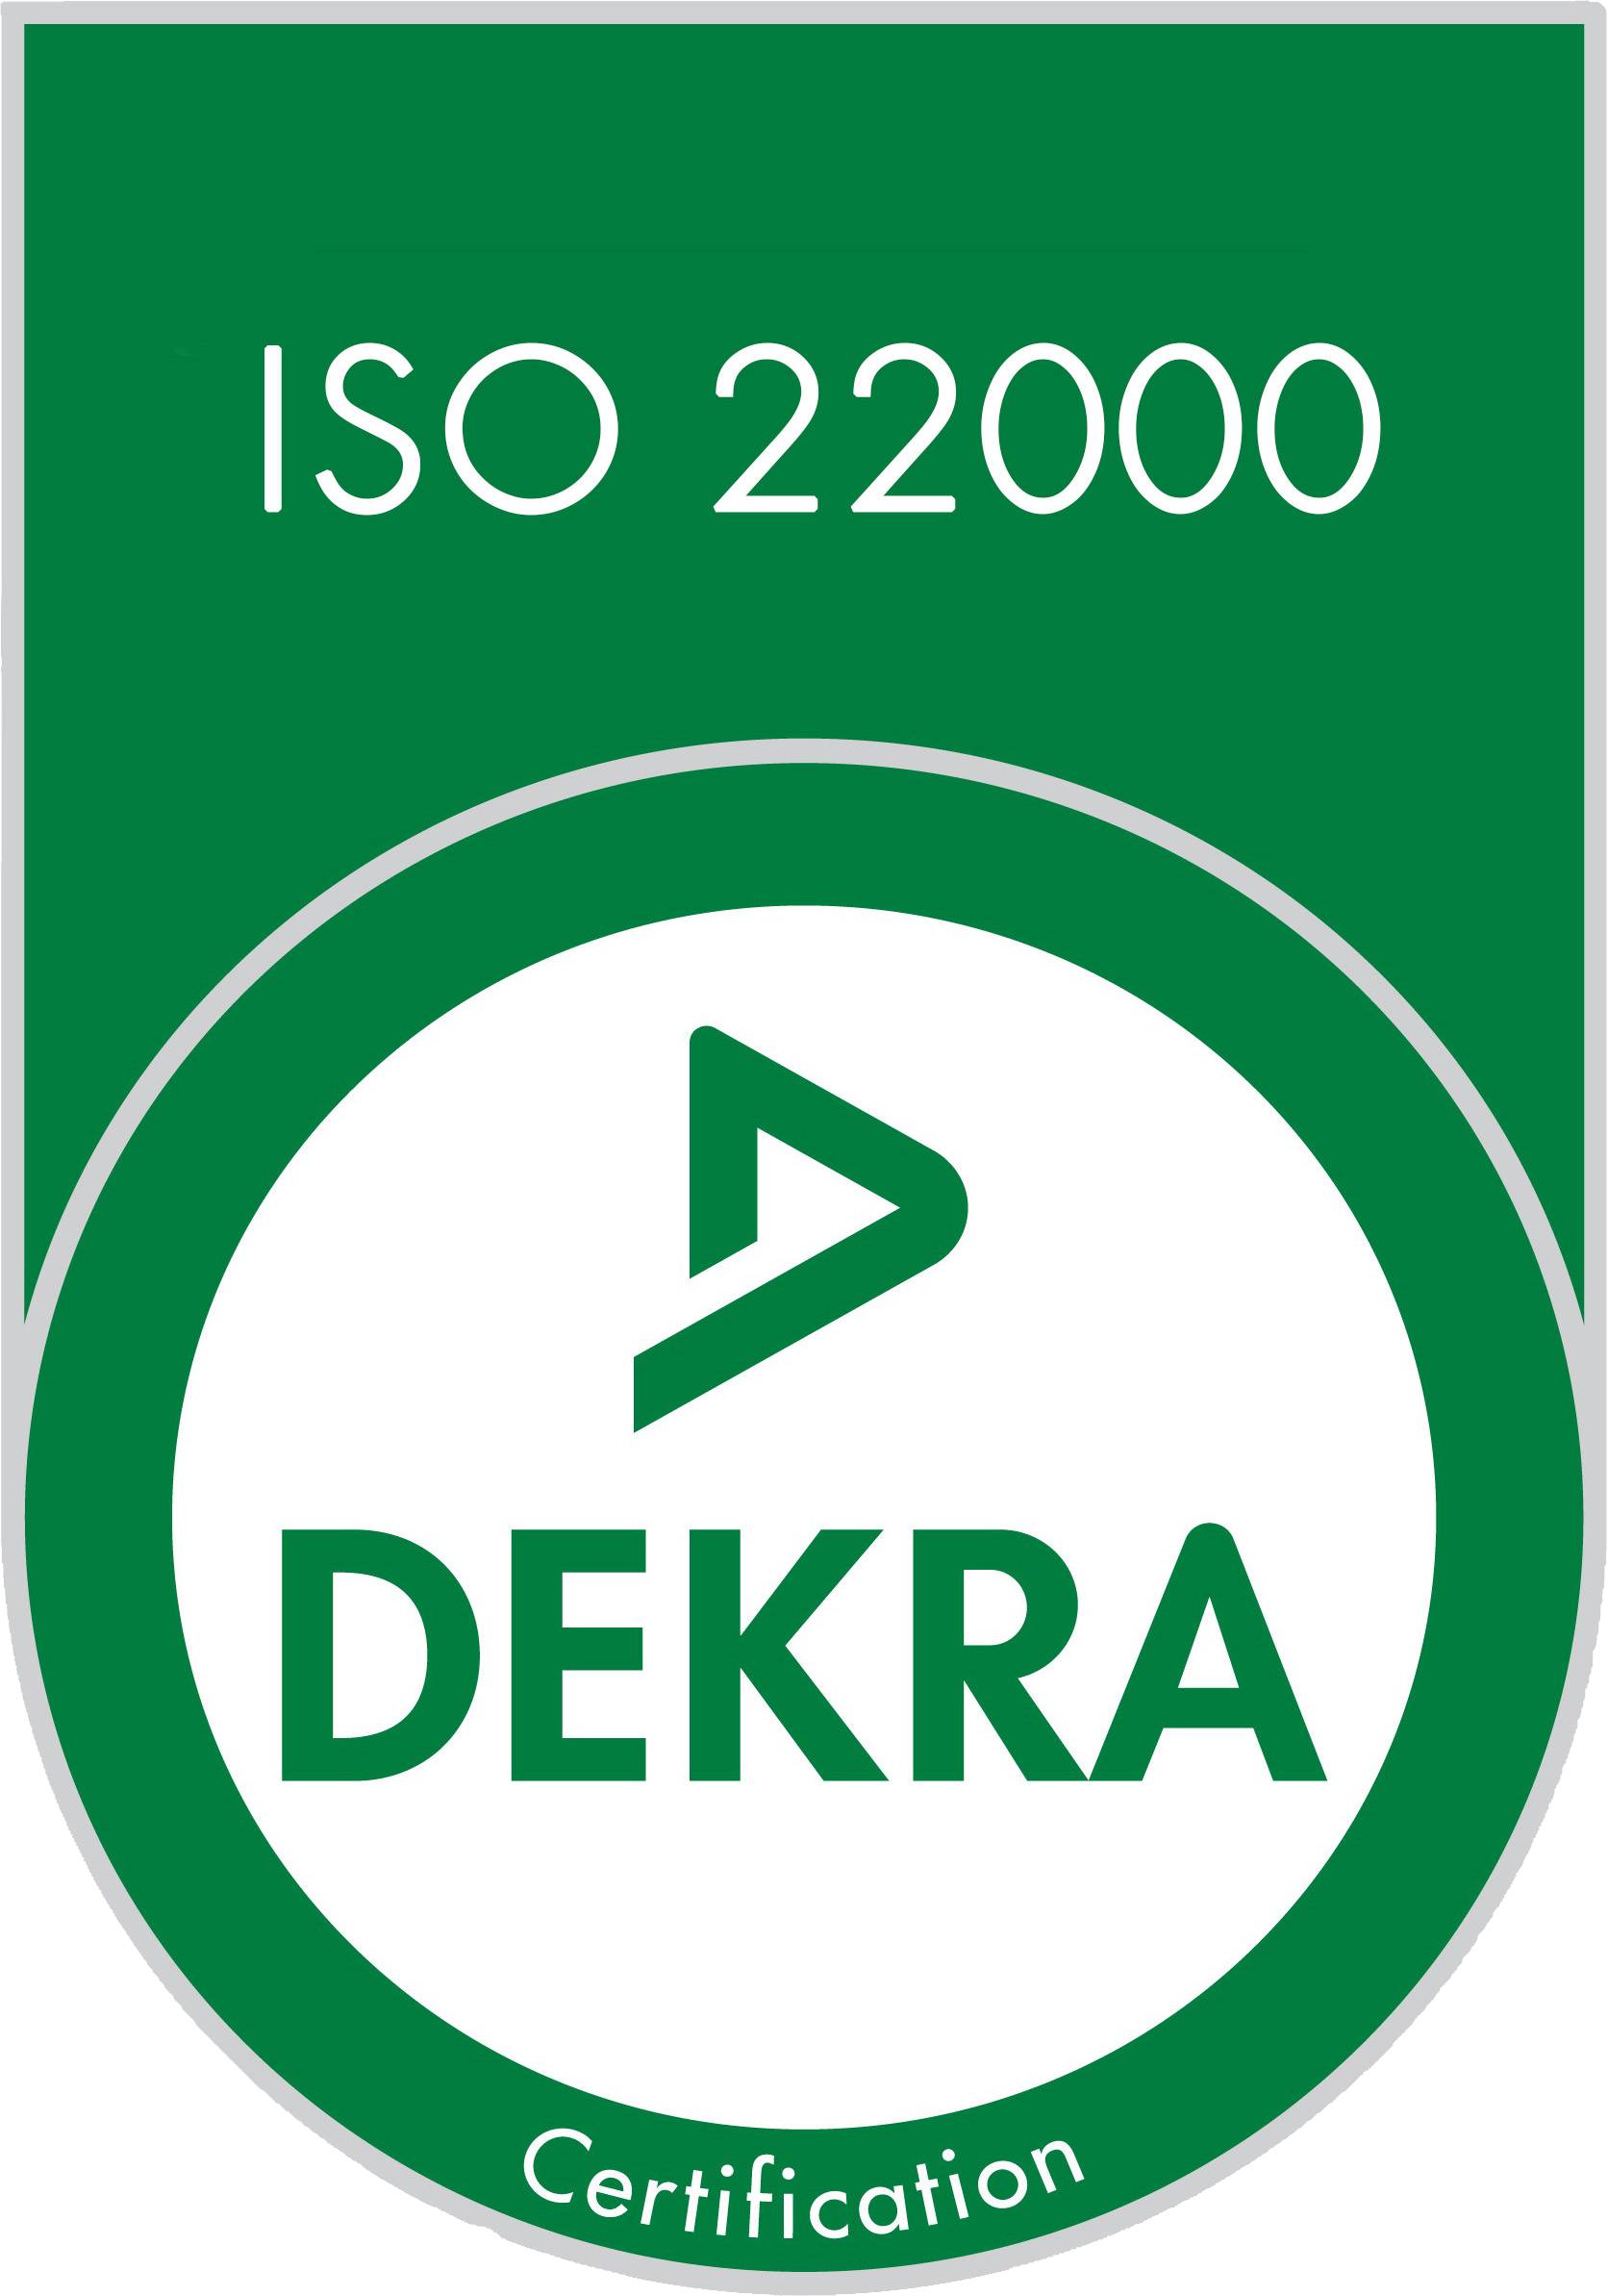 IFS 22000 DEKRA